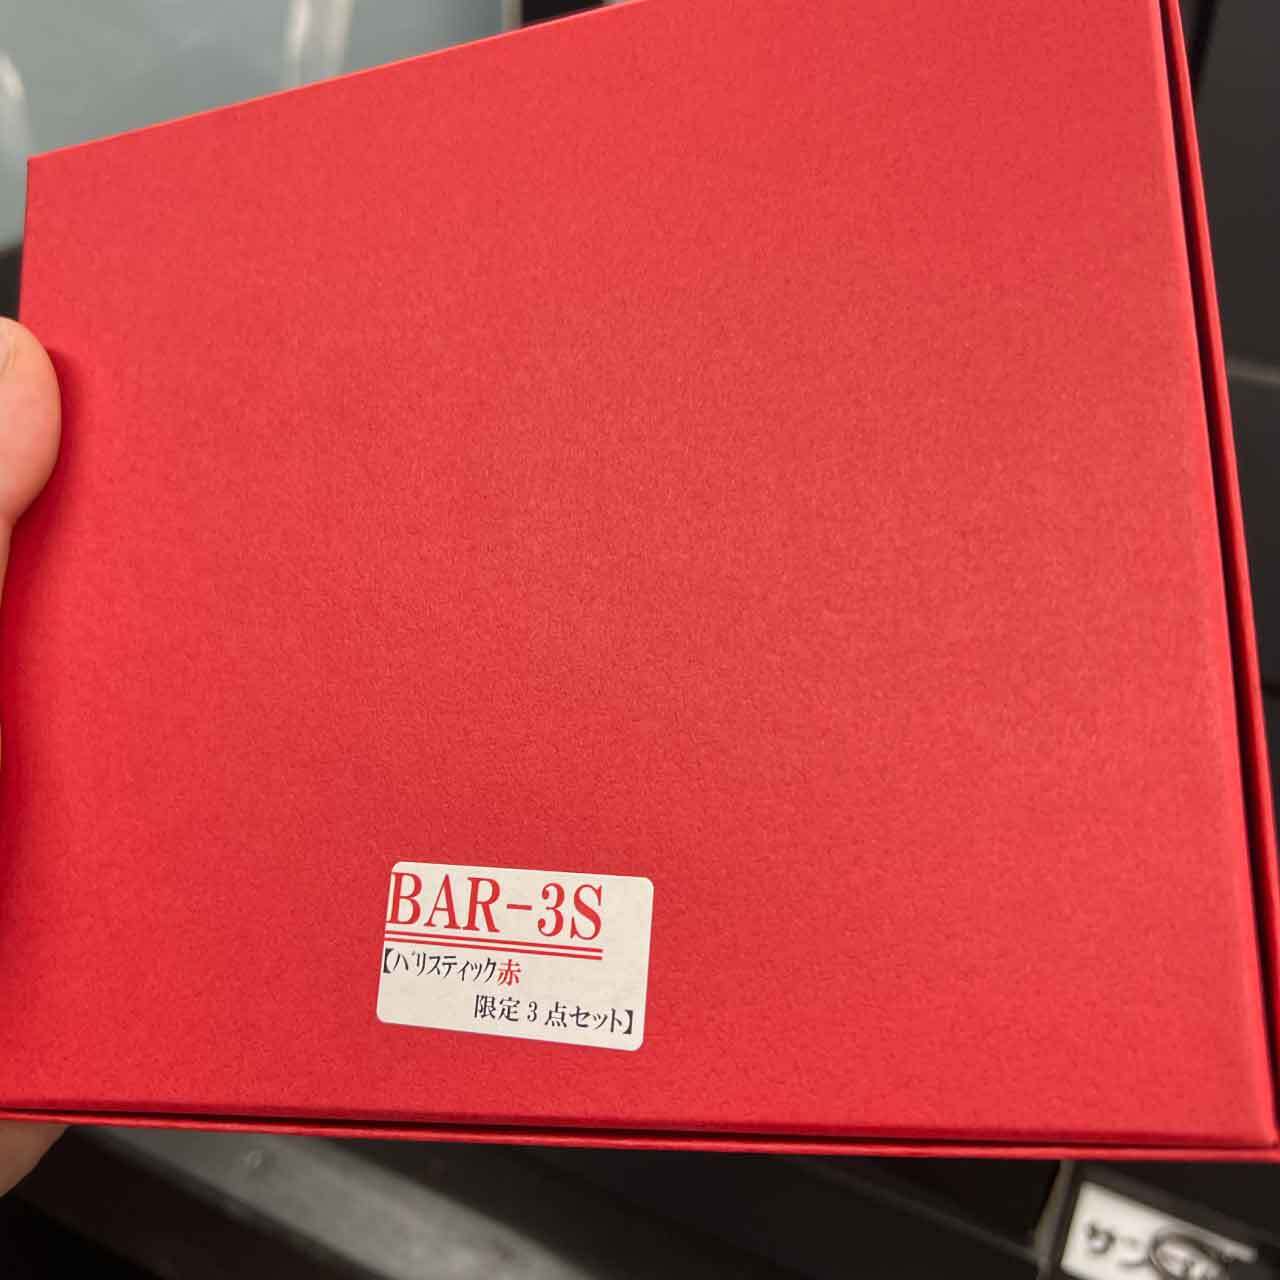 注目ショップ・ブランドのギフト 限定 KNICKS ニックス 赤バリスティック 財布 名刺入れ BAR-3S